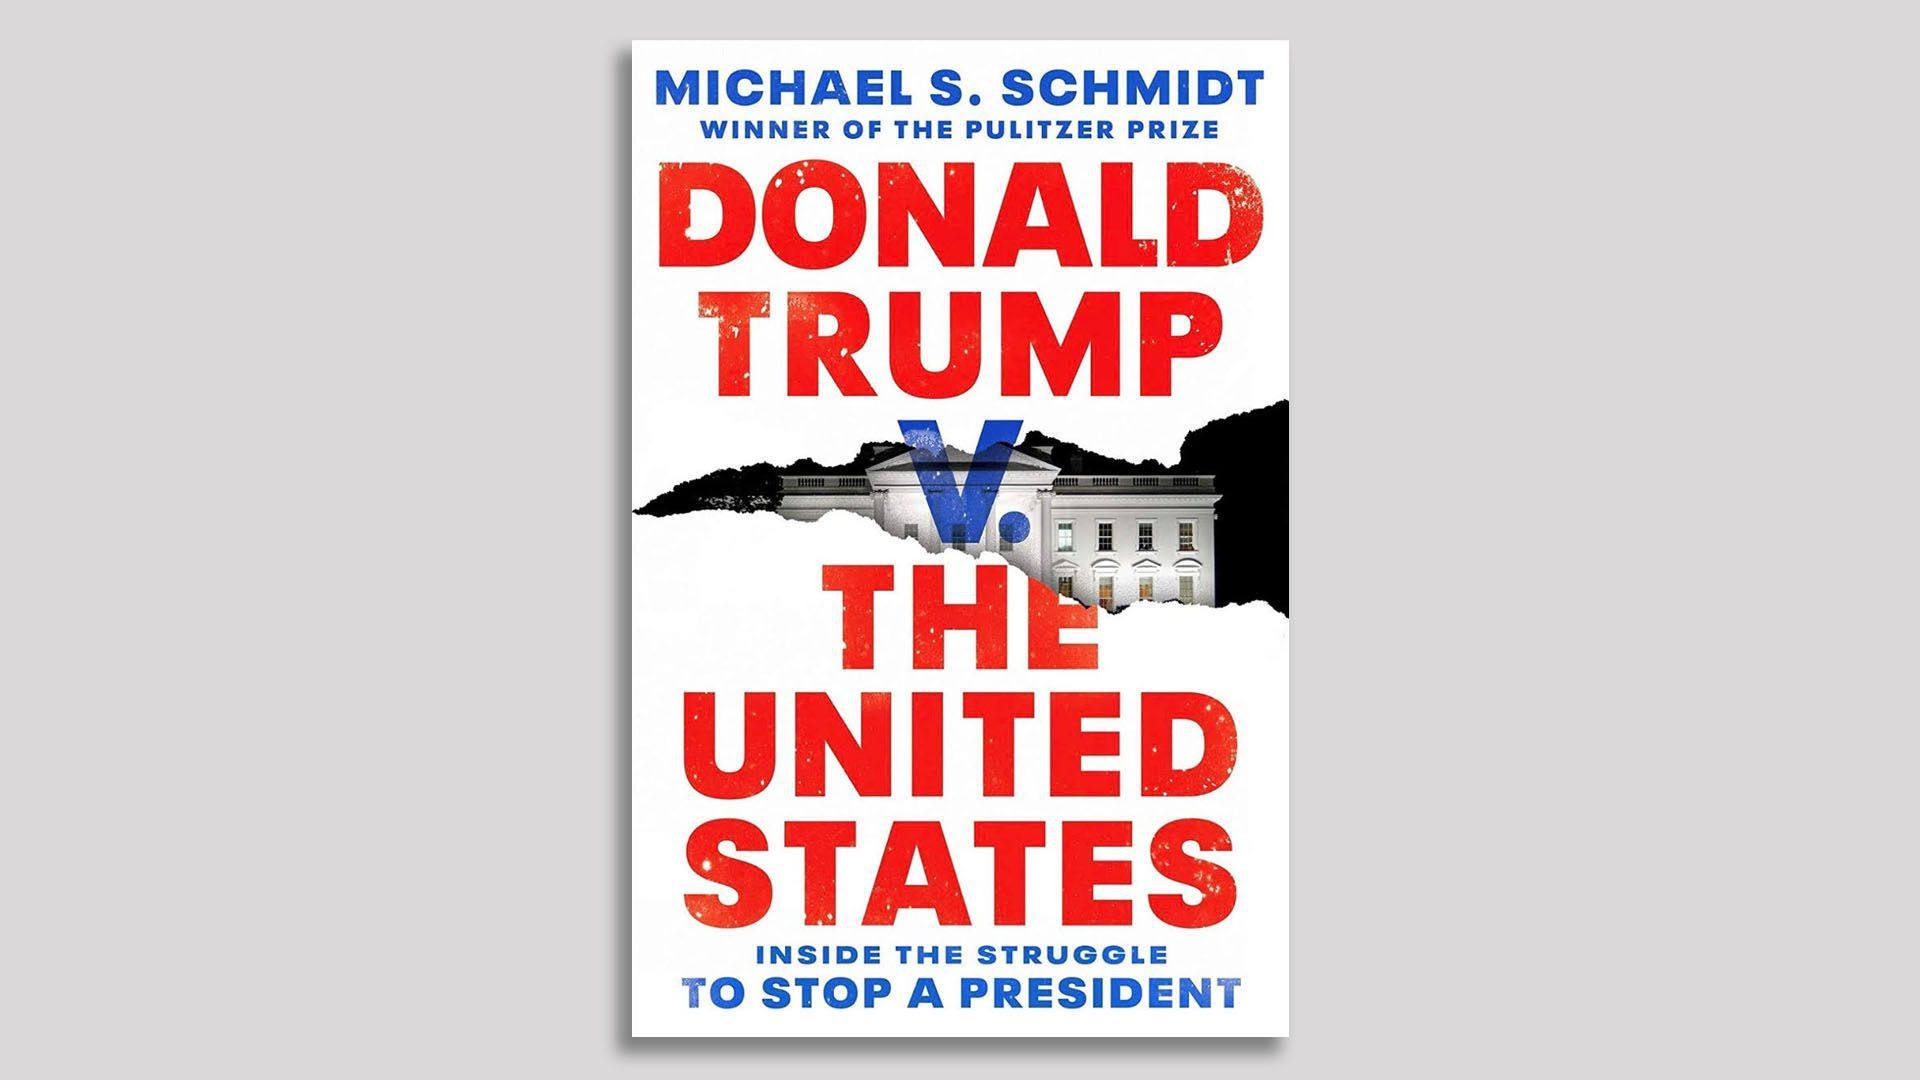 Michael Schmidt book cover.